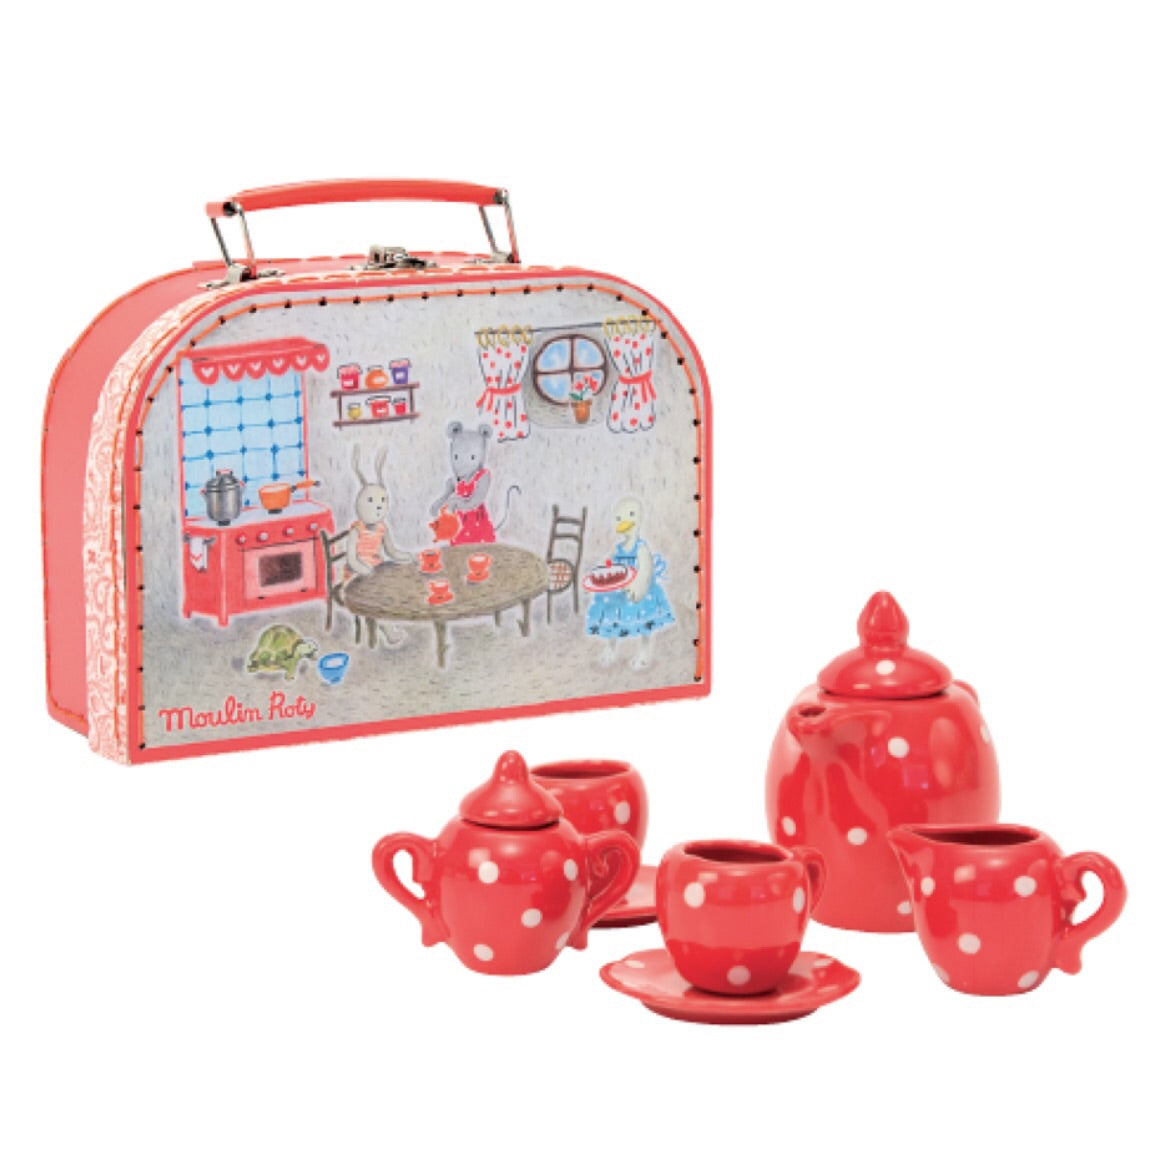 Red Ceramic Tea Set